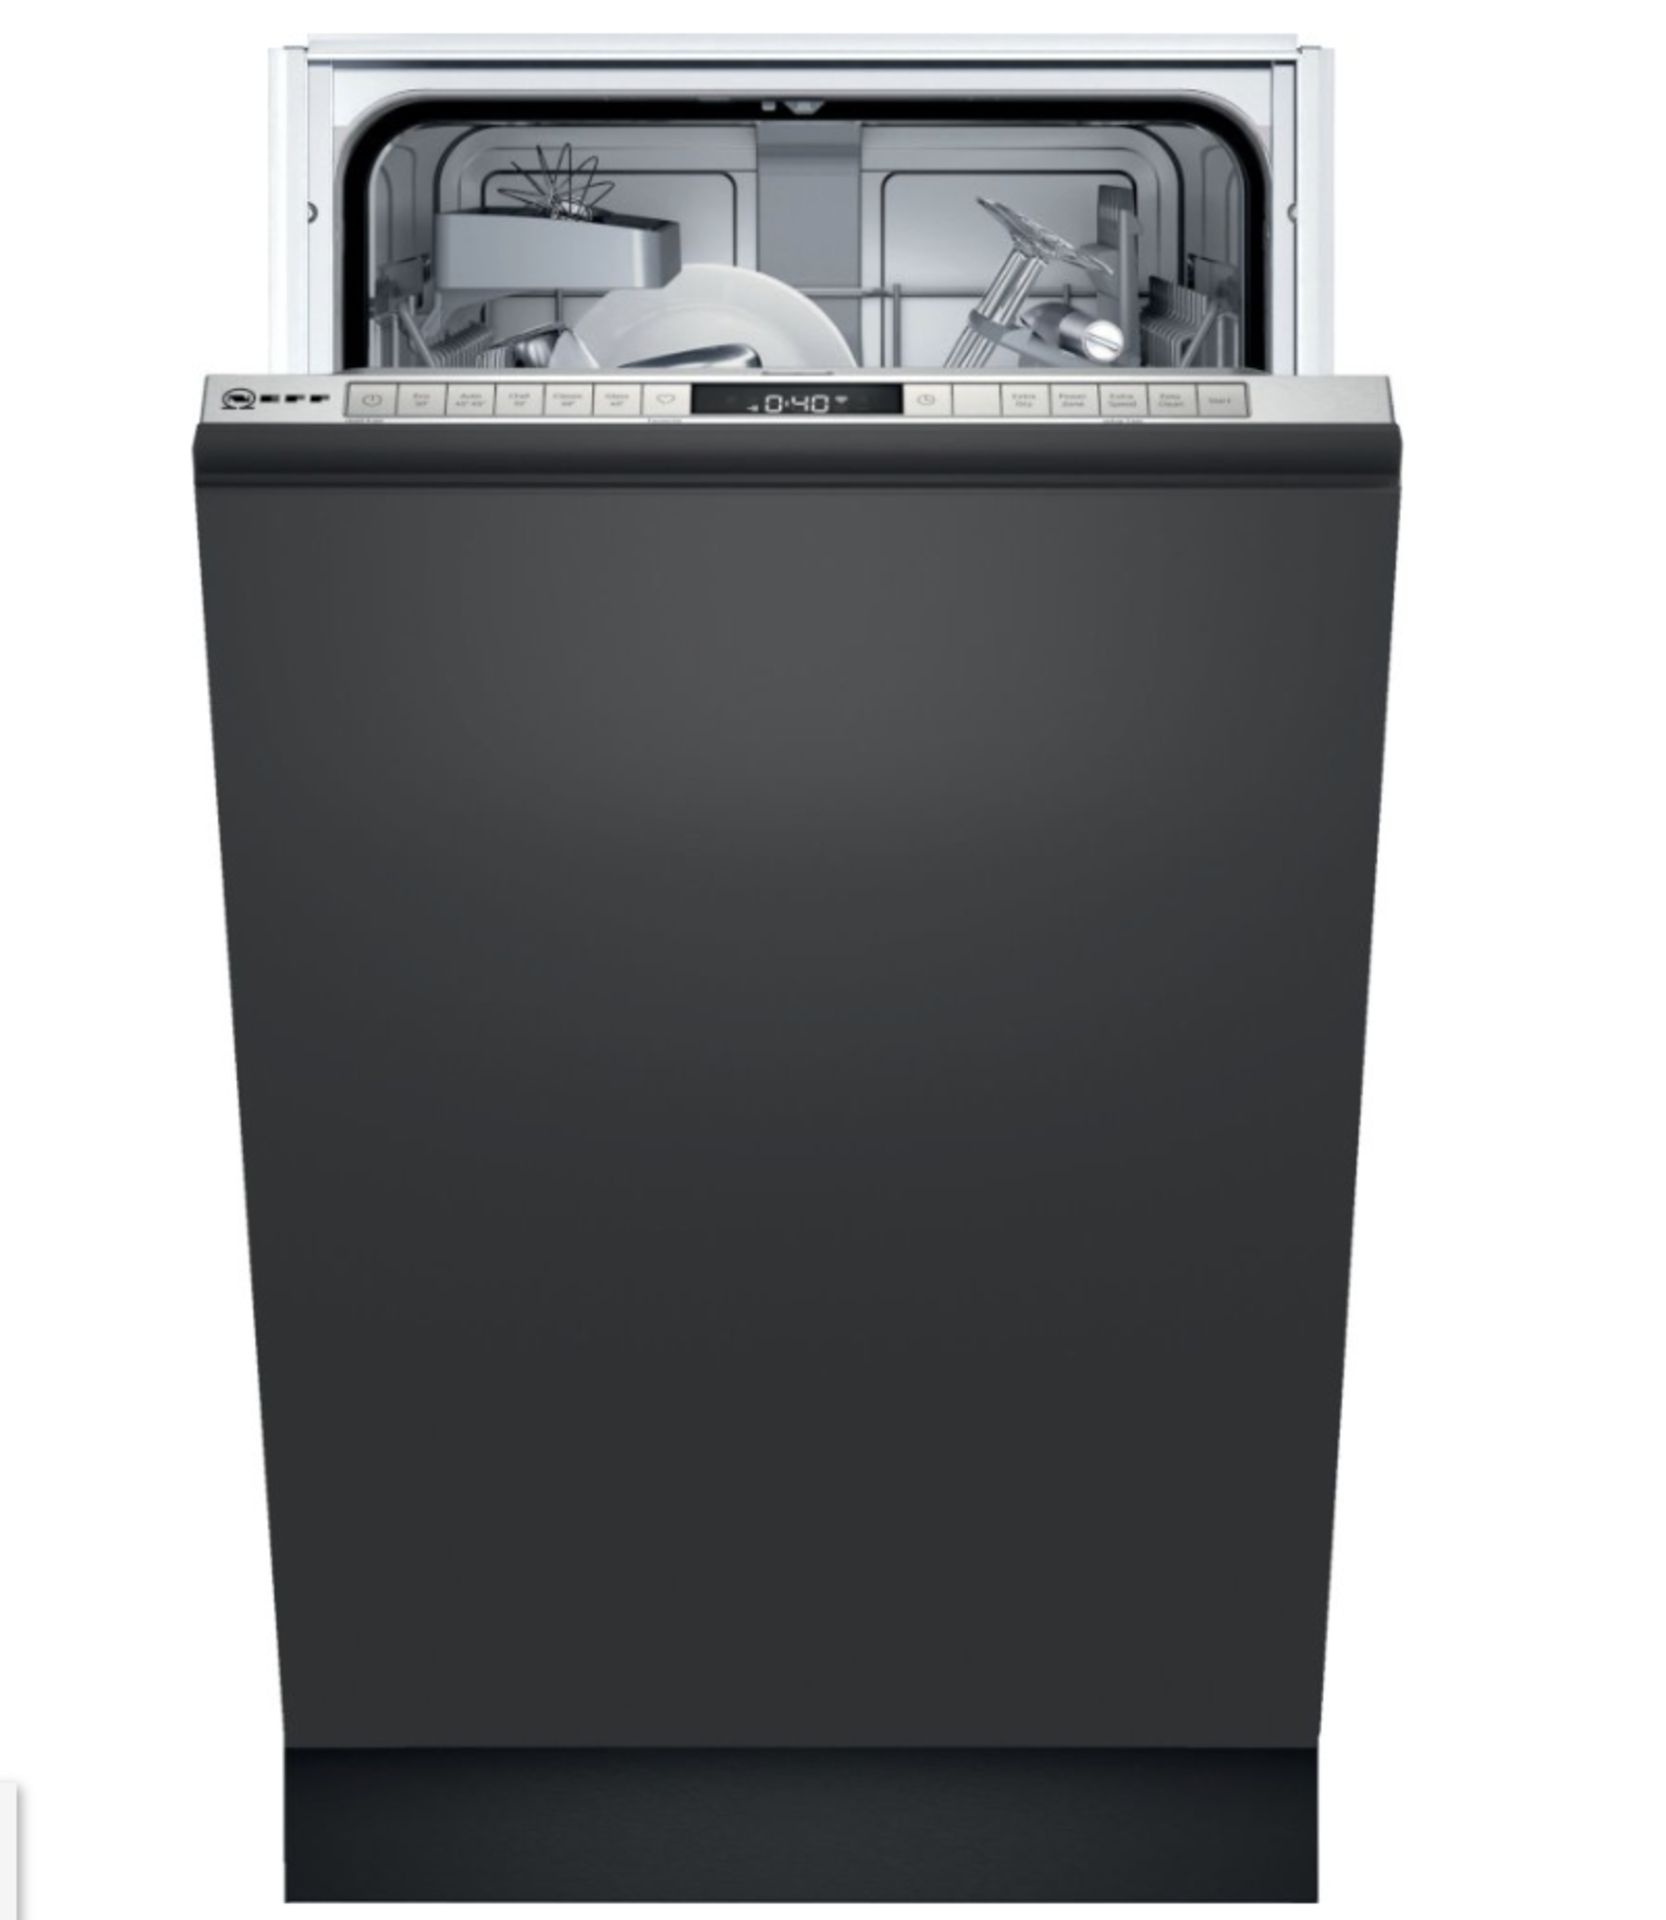 ITEM_DESCRIPTION - Neff S975HKX20G Built-In Fully Int. Slimline Dishwasher - Grading Info. -...